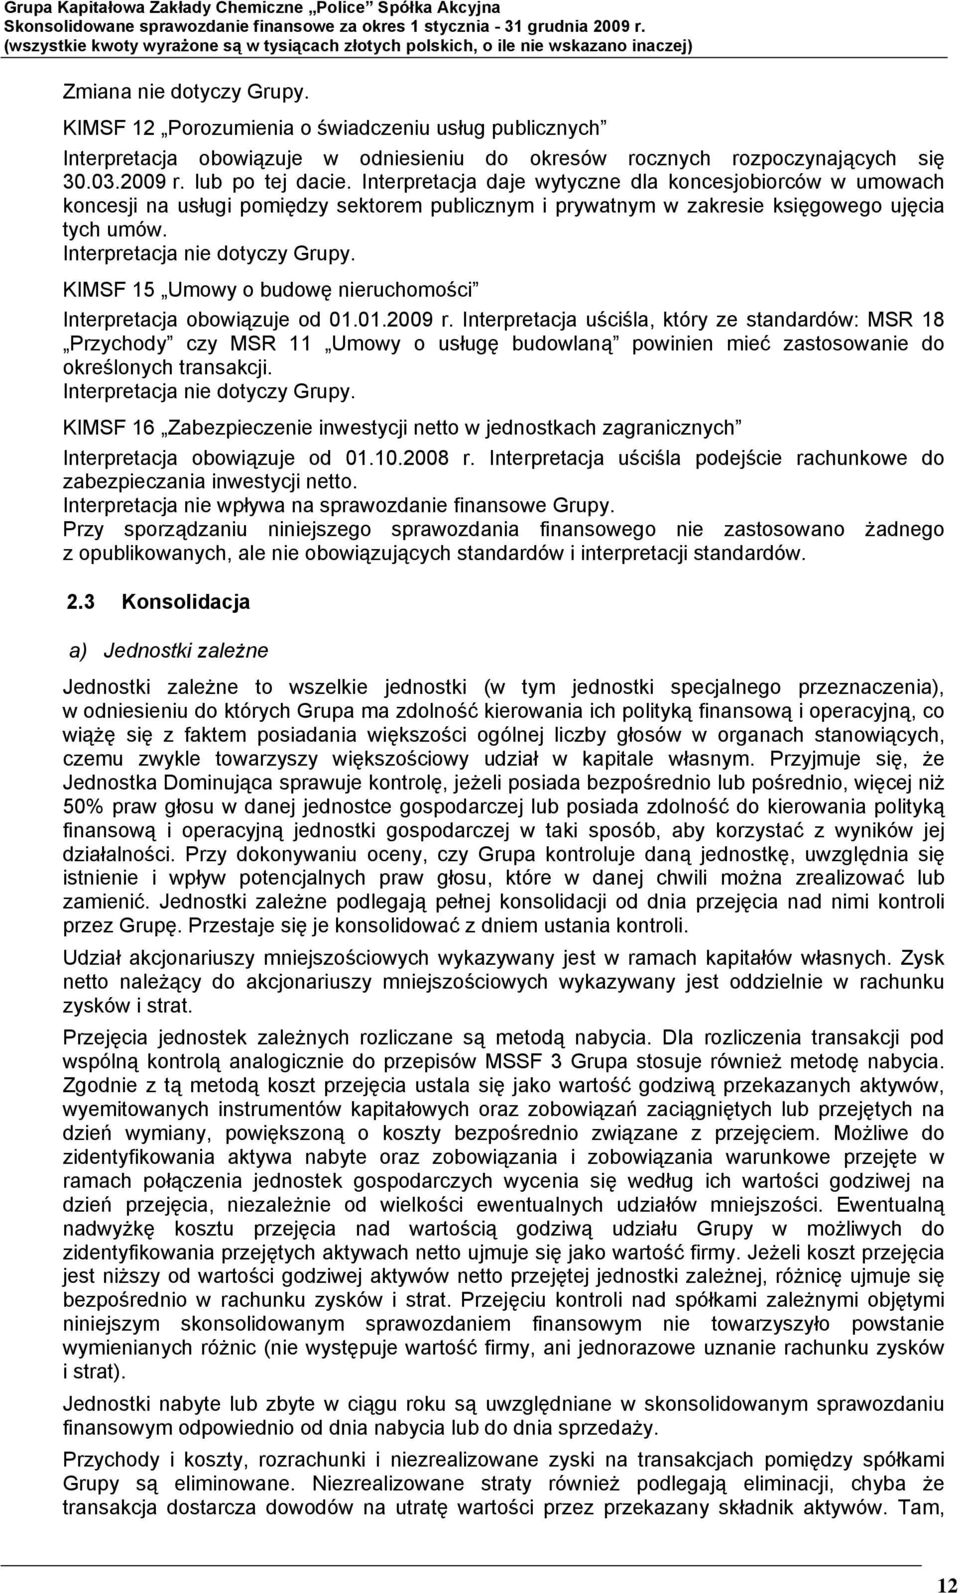 KIMSF 15 Umowy o budowę nieruchomości Interpretacja obowiązuje od 01.01.2009 r.